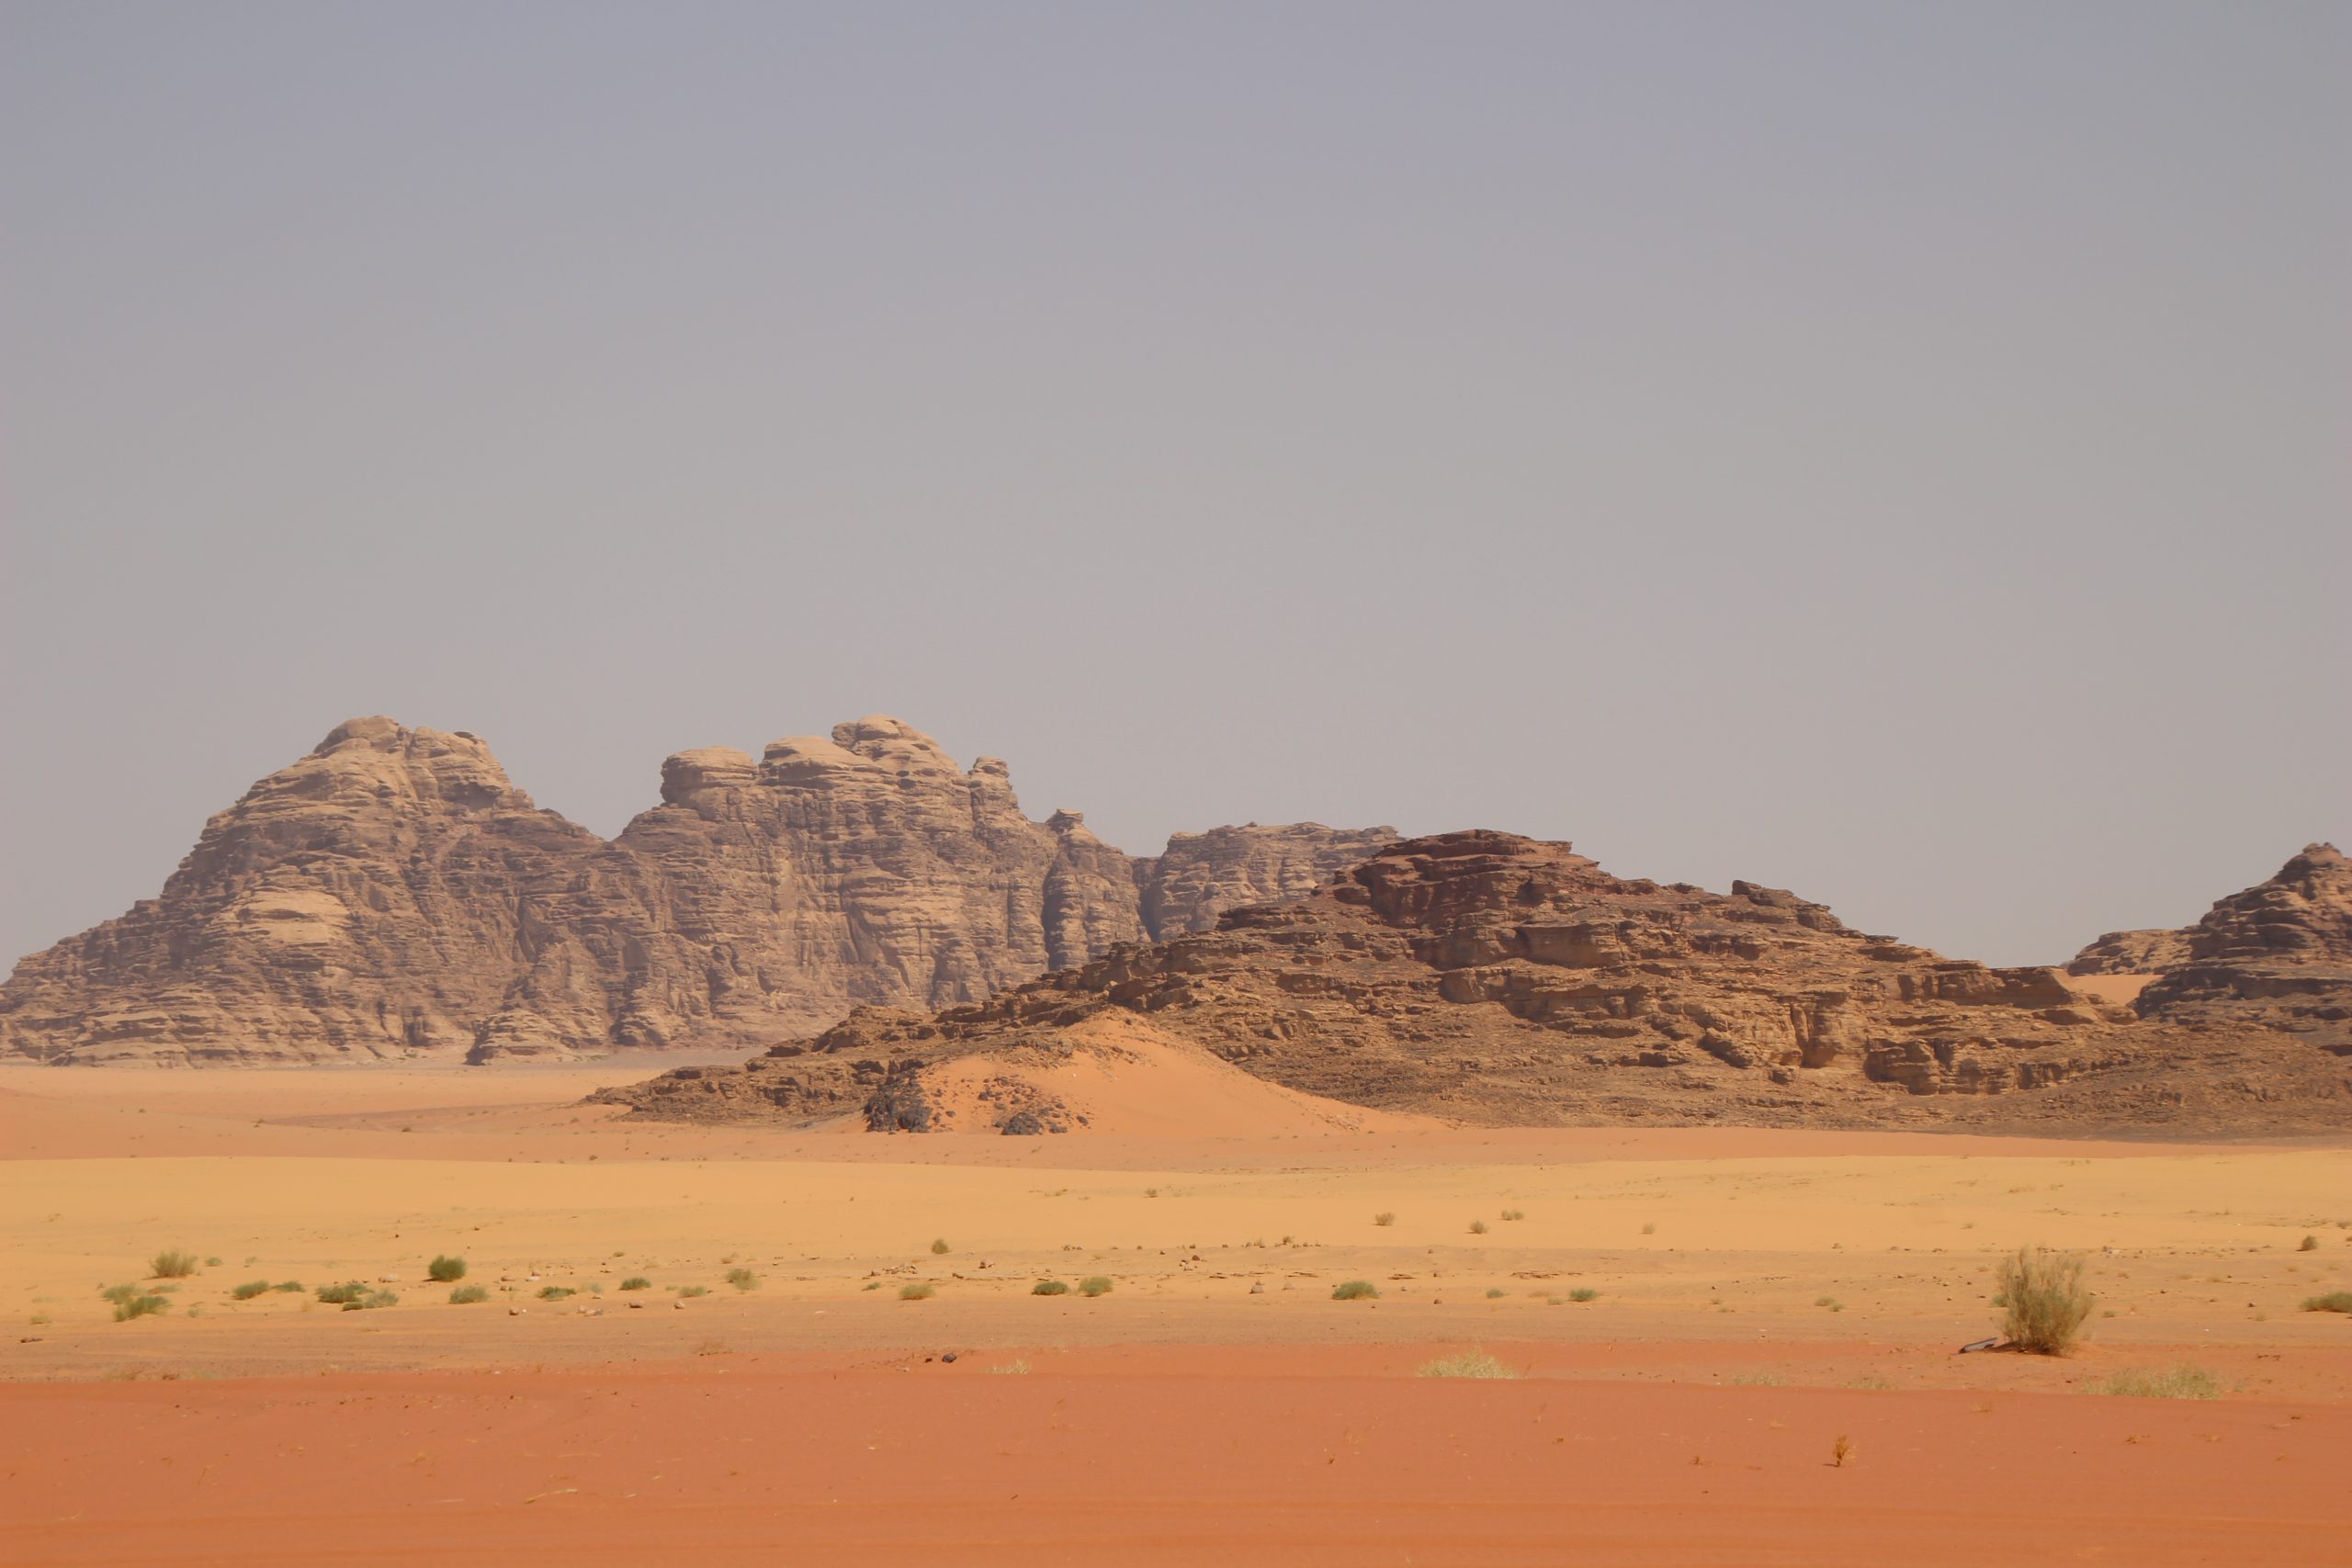 Exploring Wadi Rum Desert in Jordan